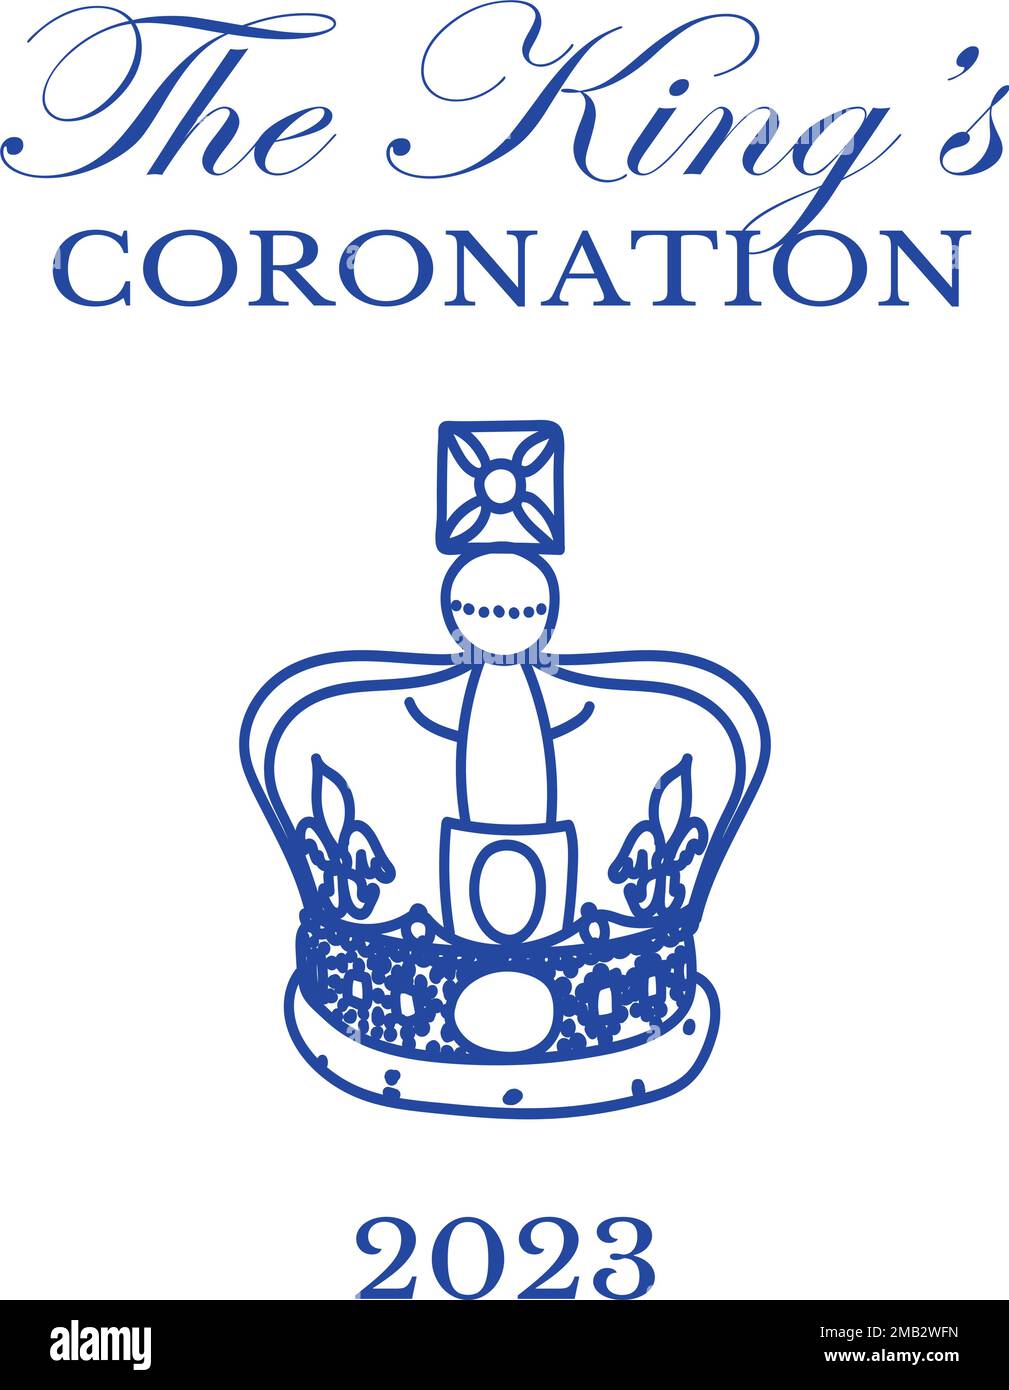 Affiche pour King Charles III Coronation avec illustration du vecteur drapeau britannique. Carte de vœux pour célébrer le couronnement du prince Charles de Galles devient roi d'Angleterre. Illustration de Vecteur